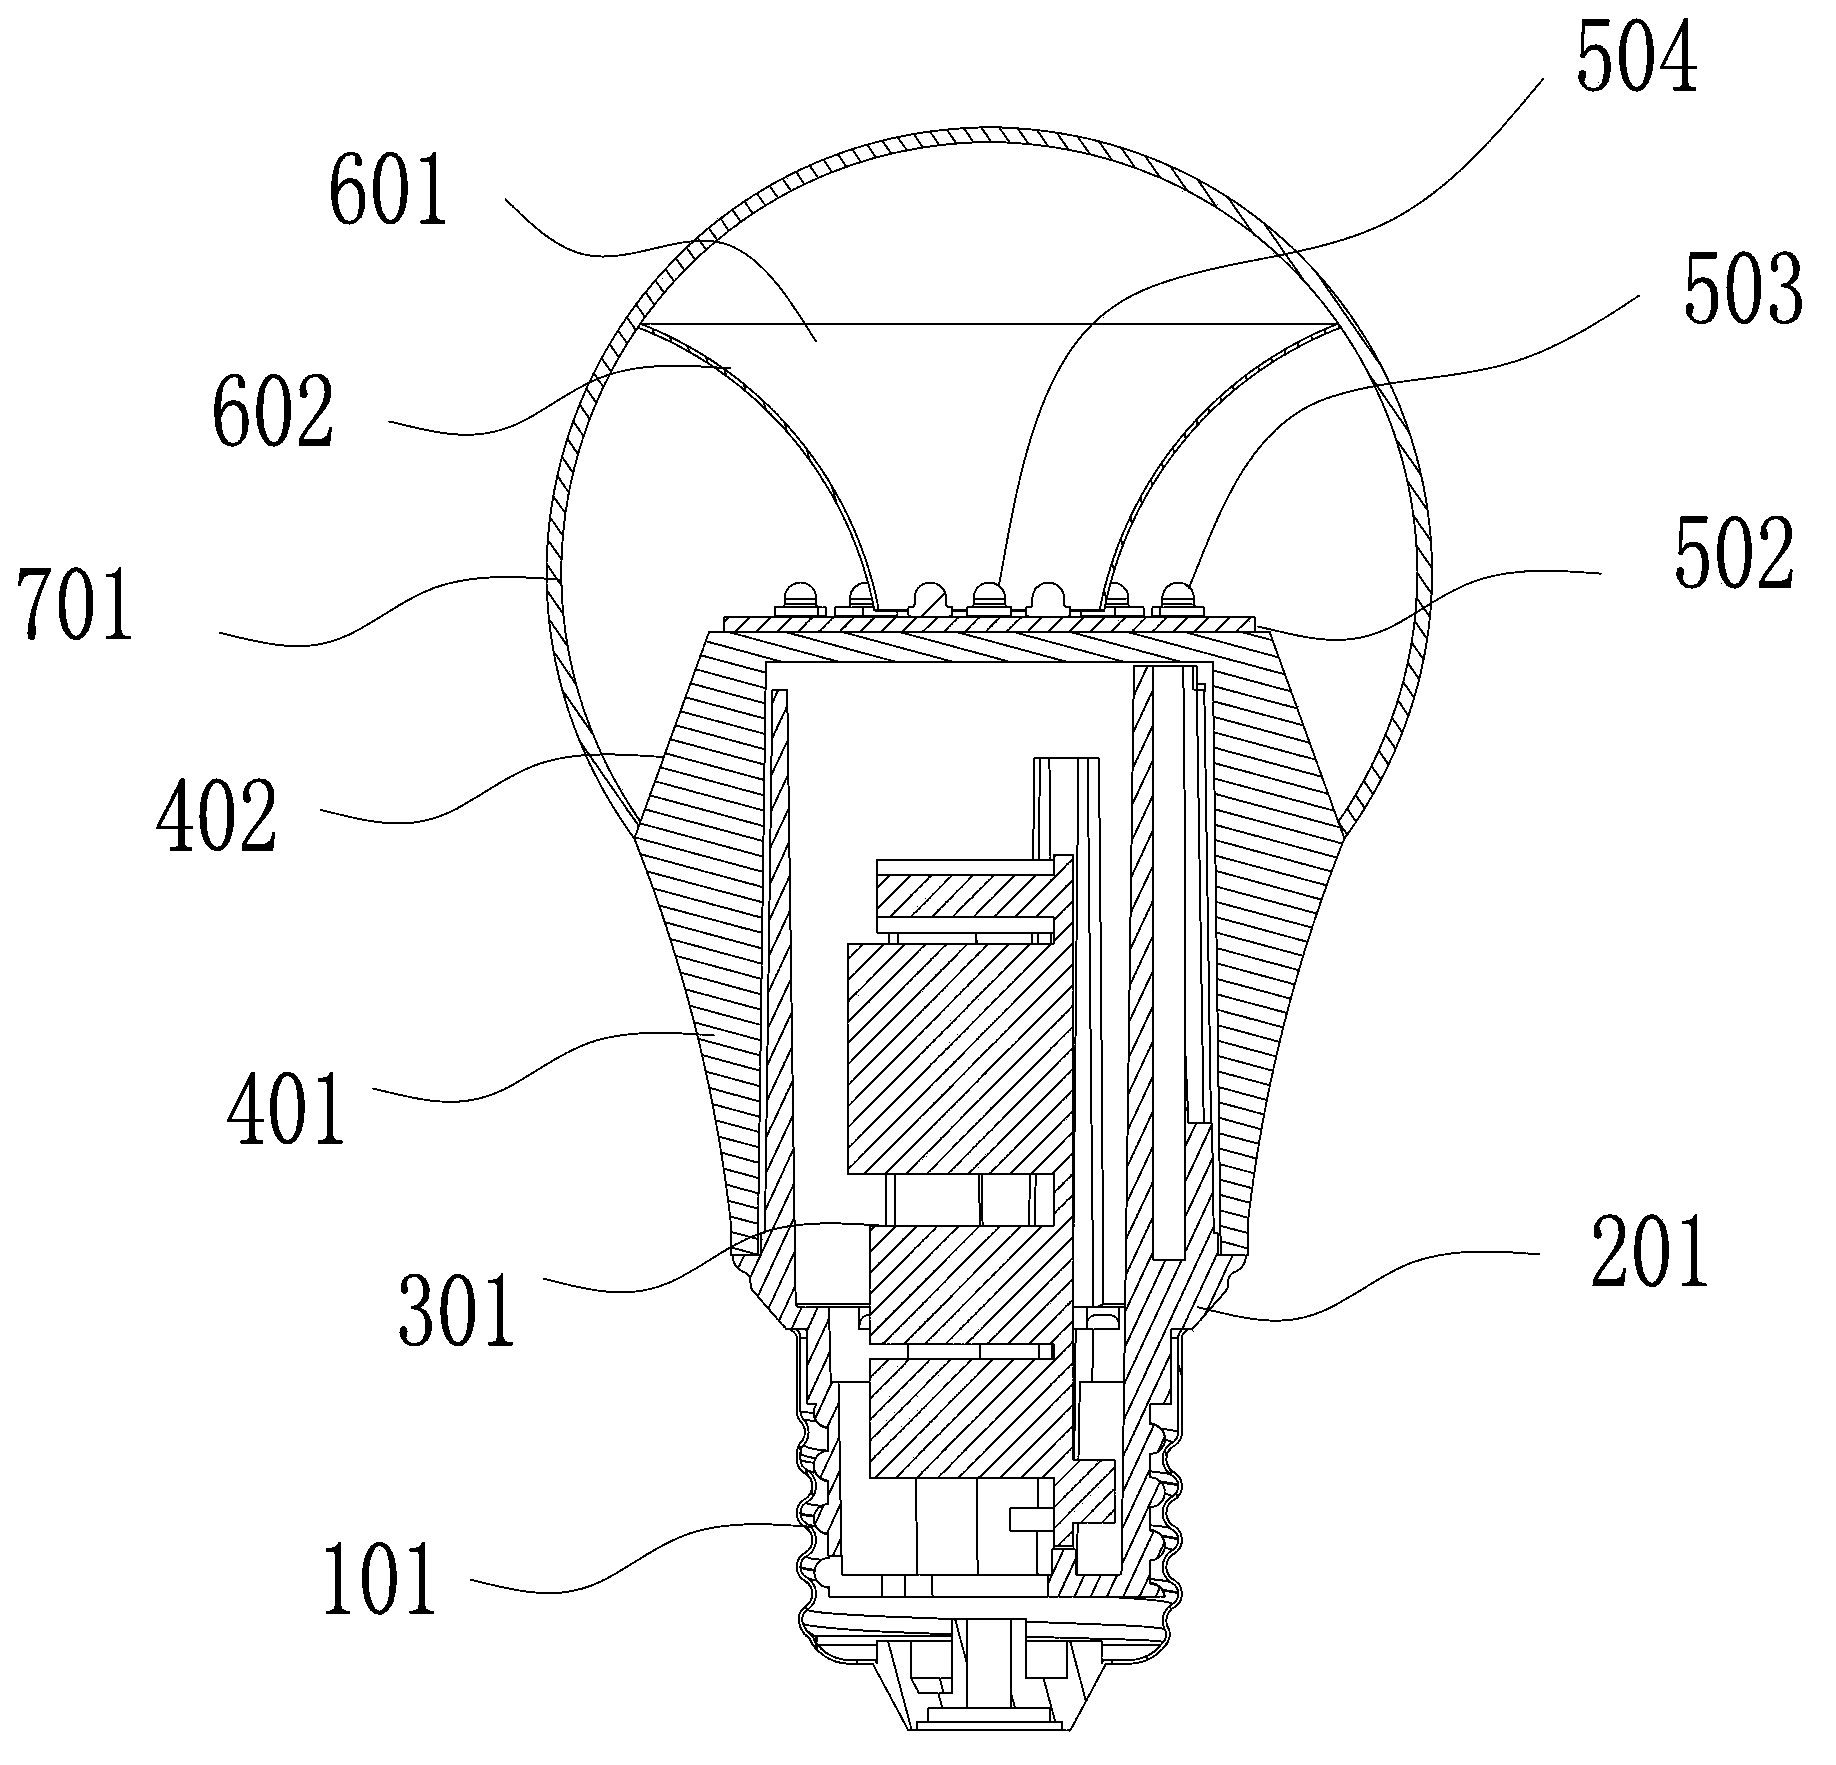 Full-light-distribution LED bulb